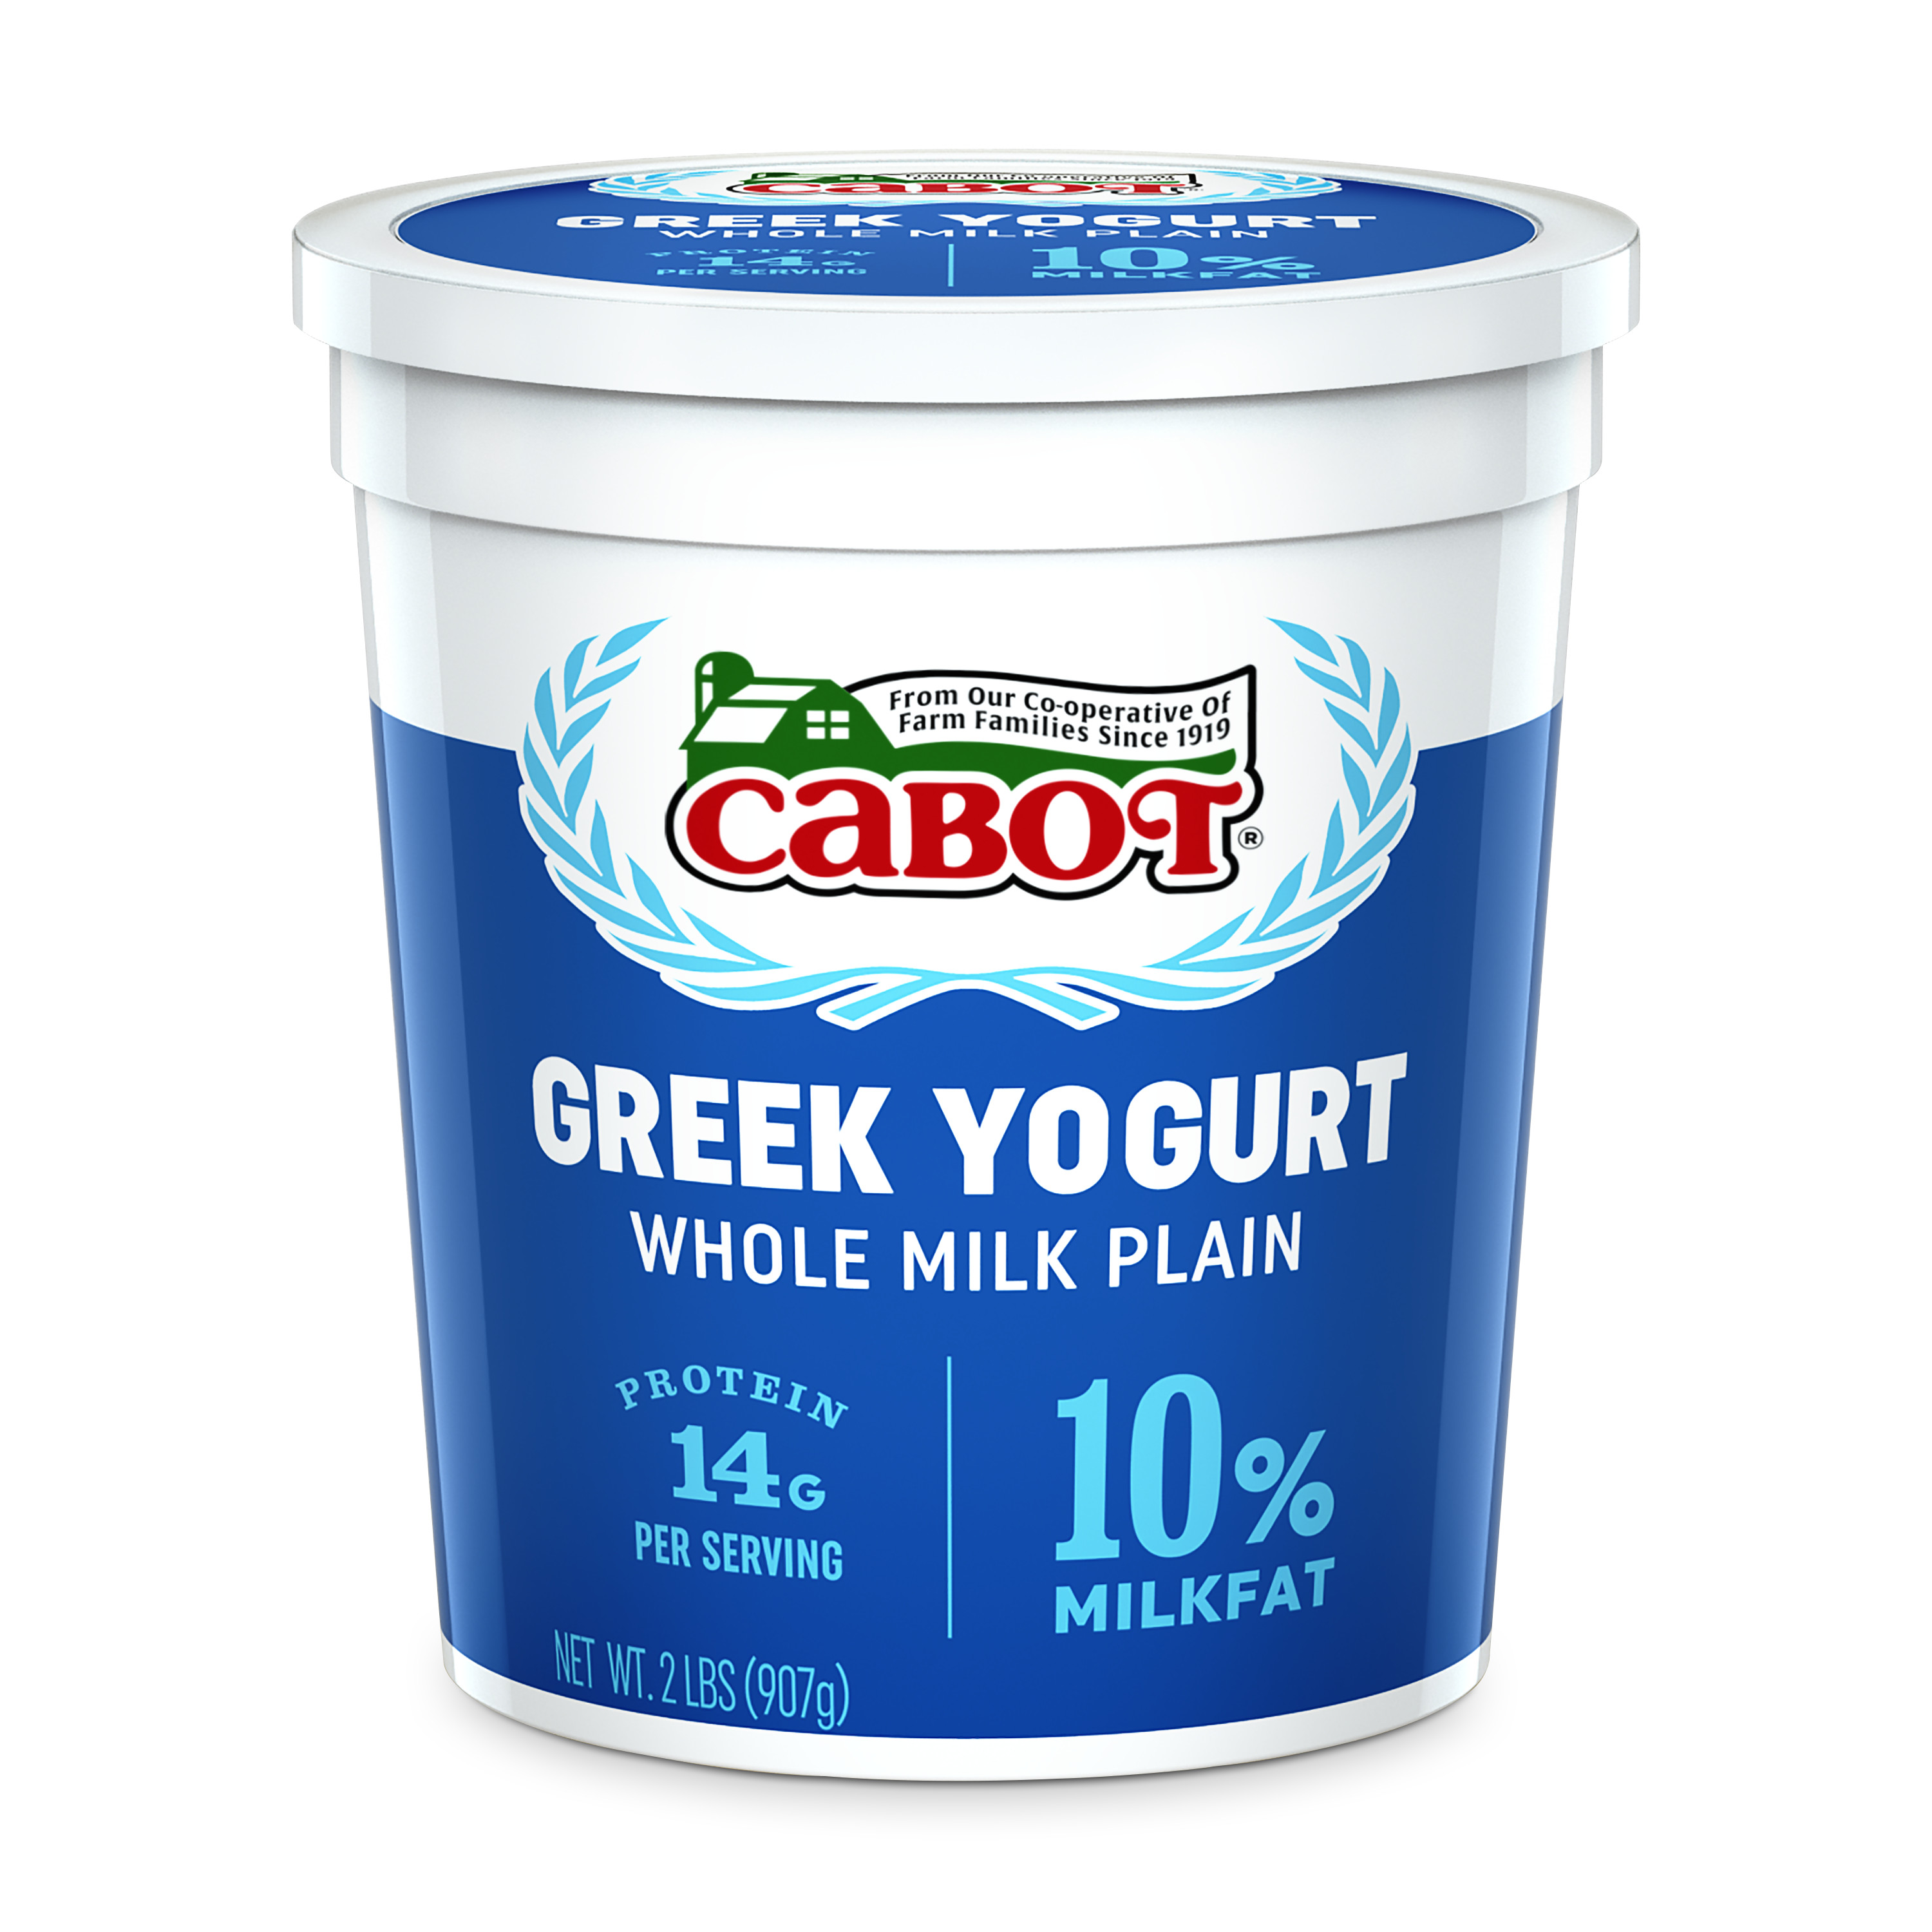 Cabot Creamery Cabot Whole Milk Plain Greek Yogurt 2 lb (Refridgerated  Tub) - image 1 of 5